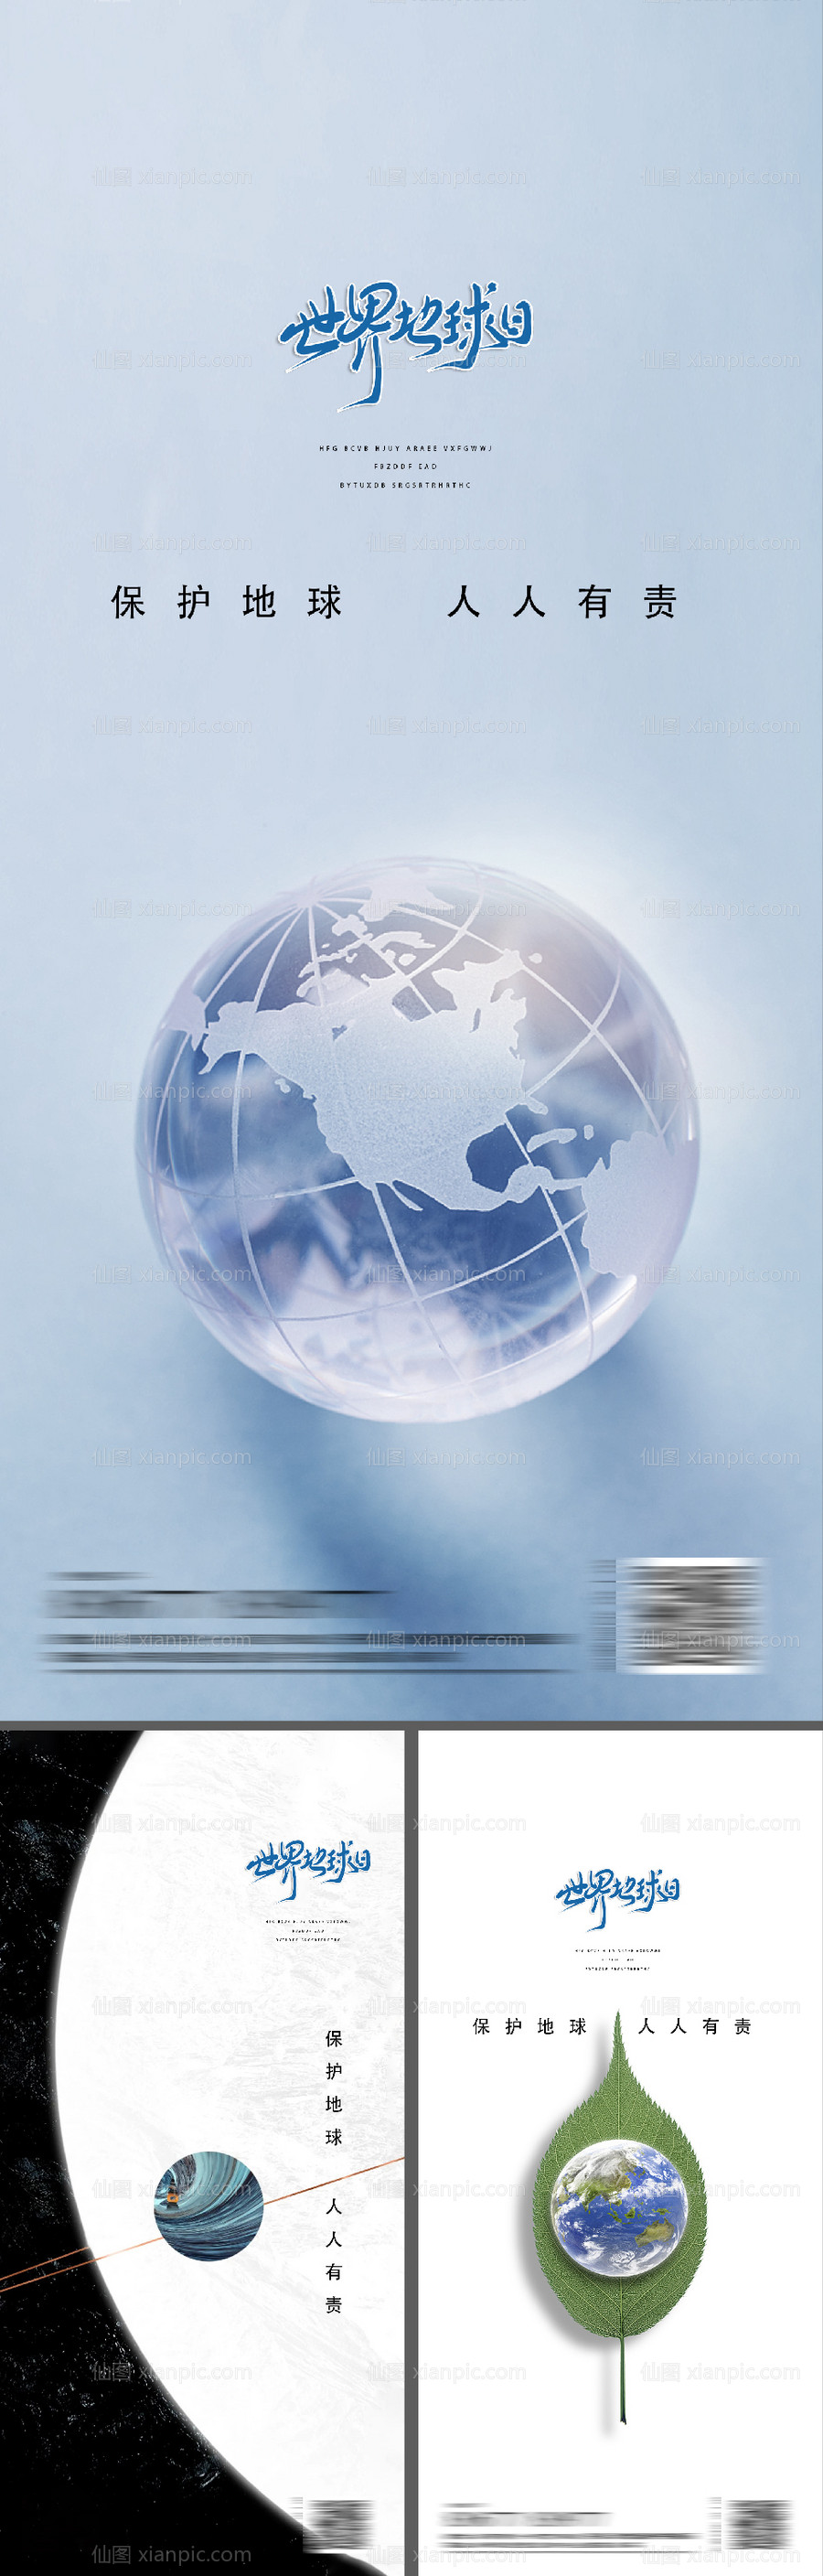 素材乐-地球日系列海报